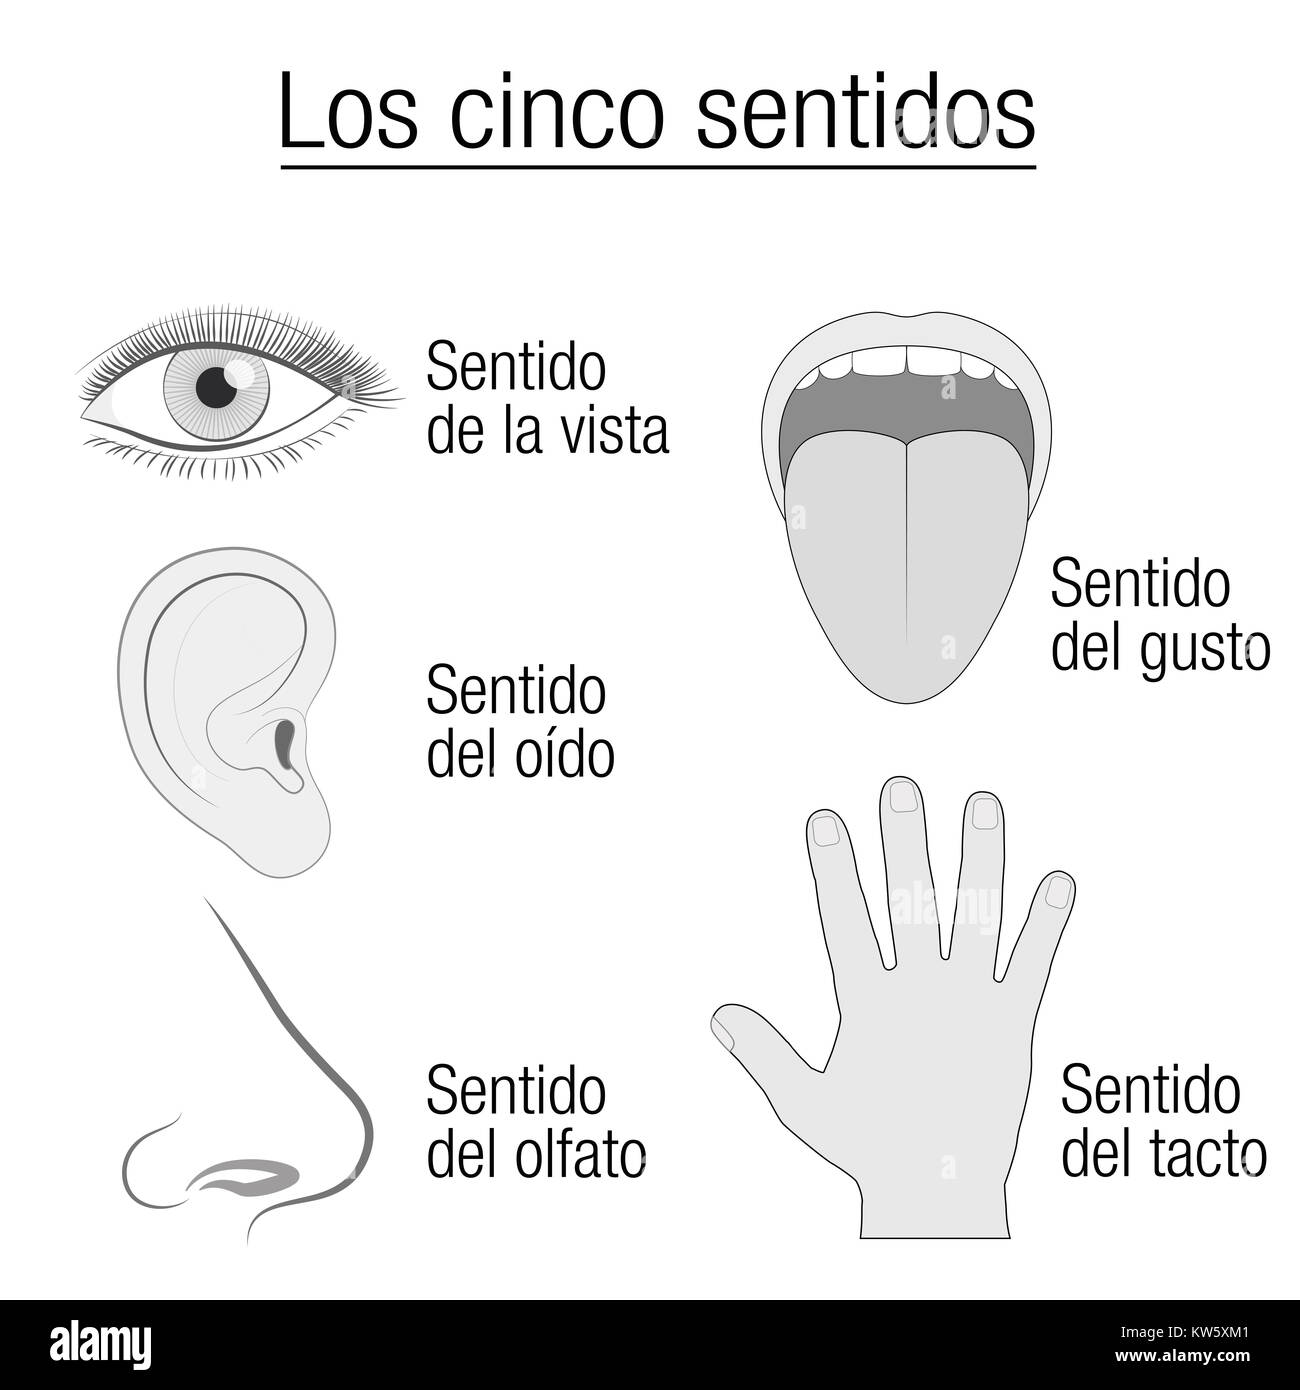 Fünf Sinne Chart mit Sinnesorgane Auge, Ohr, Zunge, Nase, Hand - entsprechende Bezeichnung Sehen, Hören, Schmecken, Riechen - SPANISCHE SPRACHE. Stockfoto